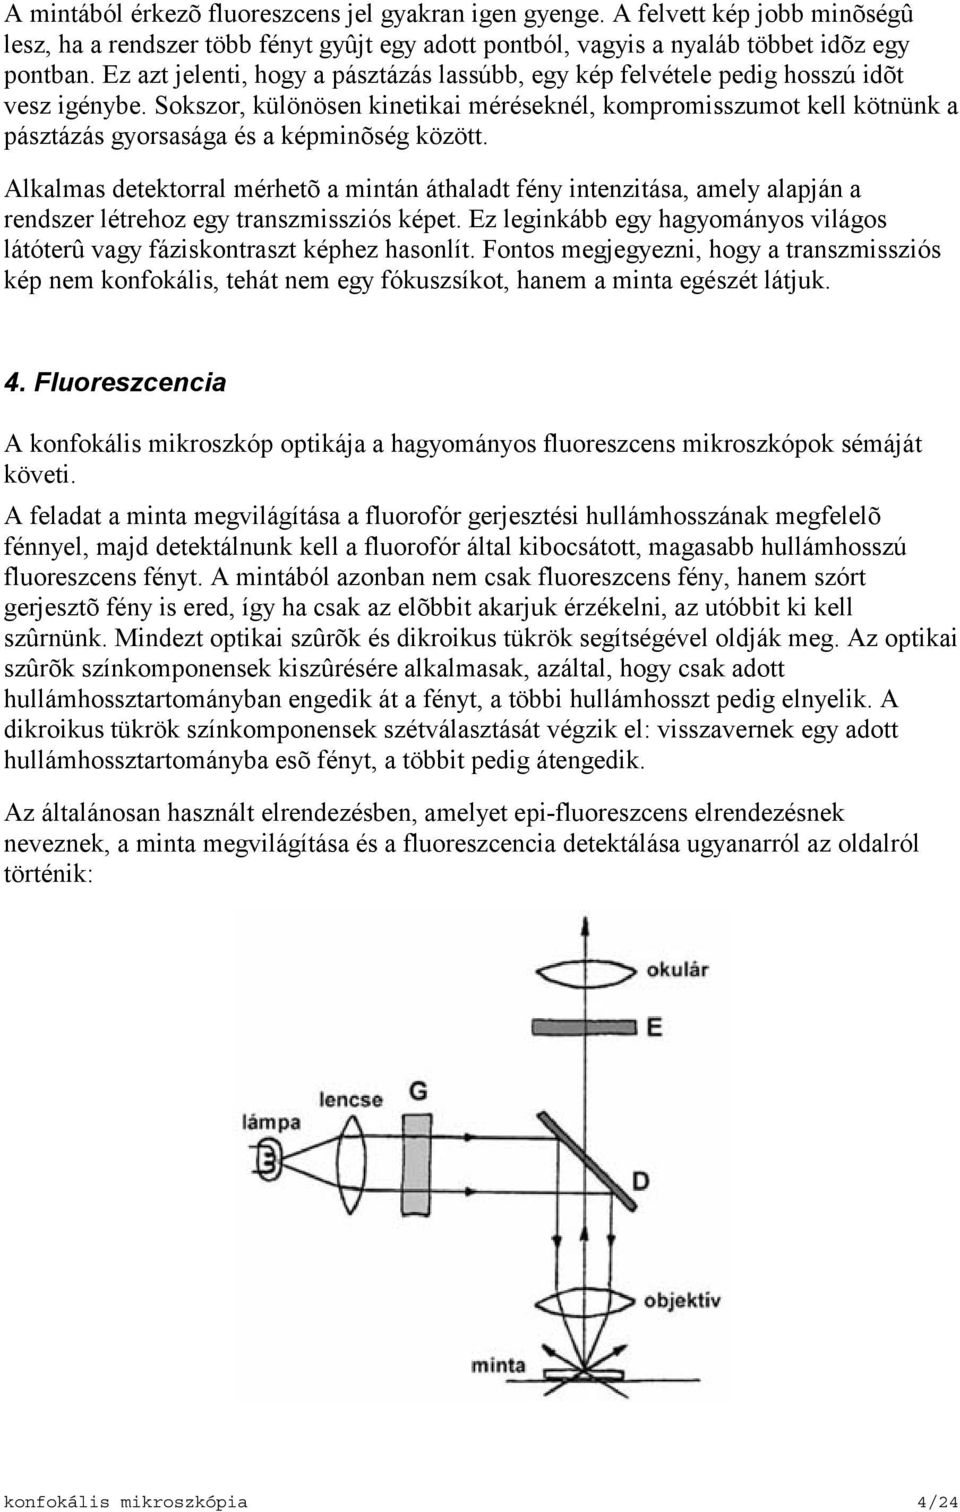 Konfokális mikroszkópia elméleti bevezetõ - PDF Free Download